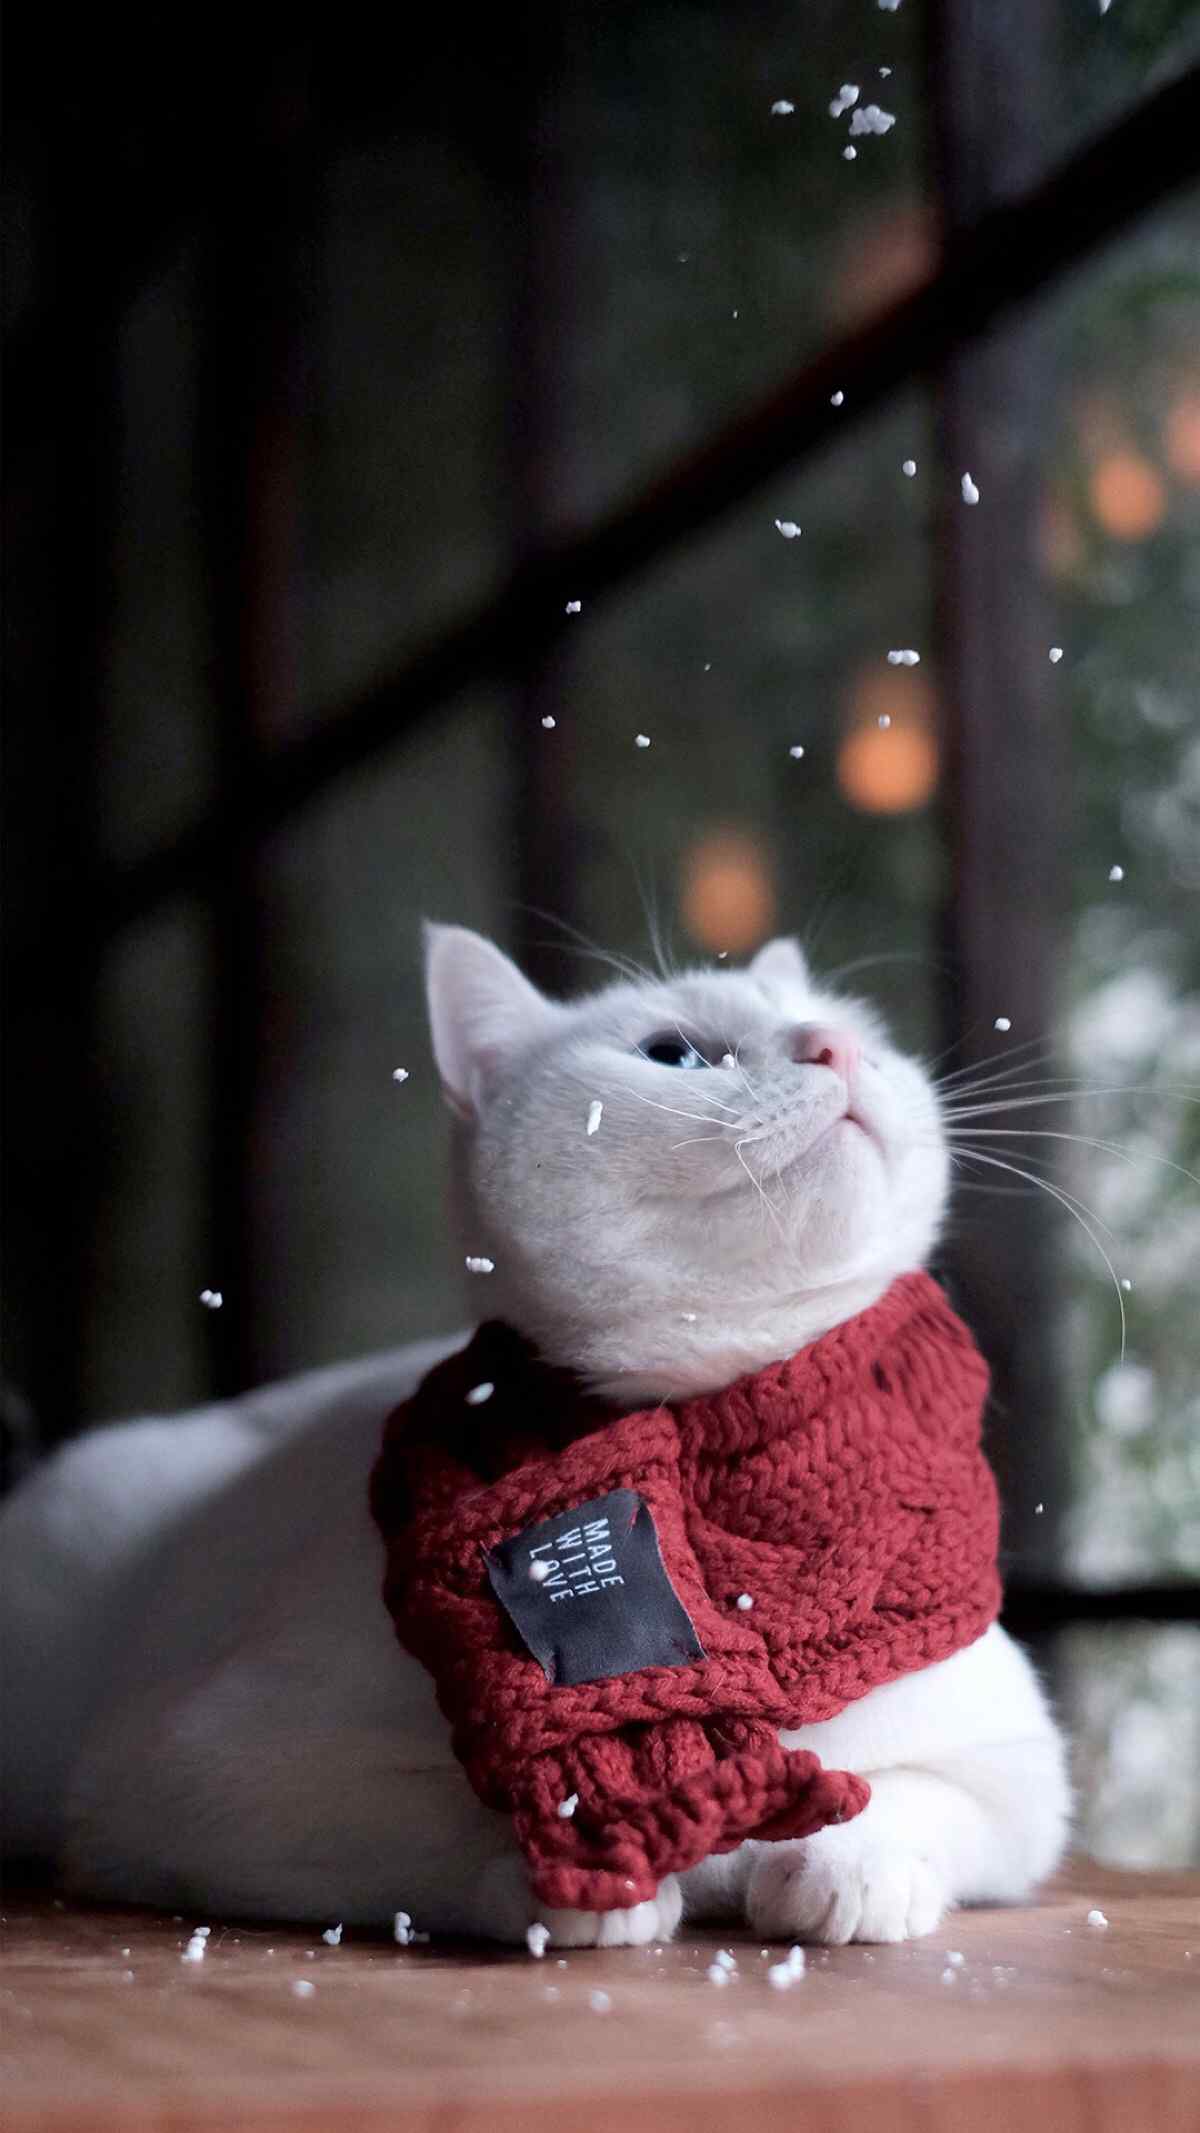 可爱的小猫咪红色围巾图片手机壁纸